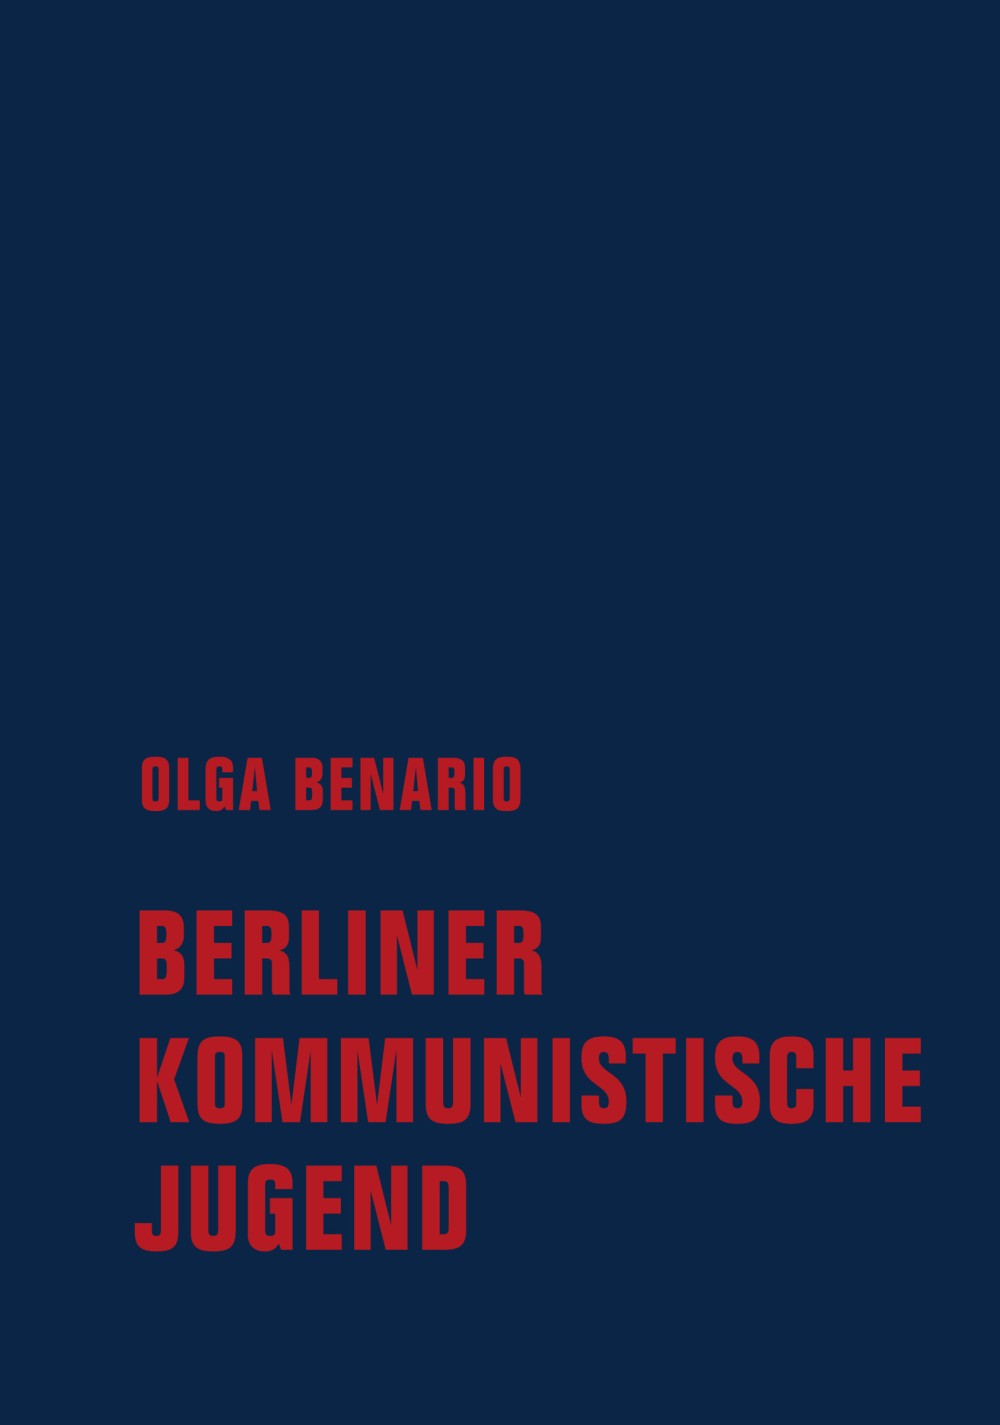 Olga Benario, Berliner Kommunistische Jugend